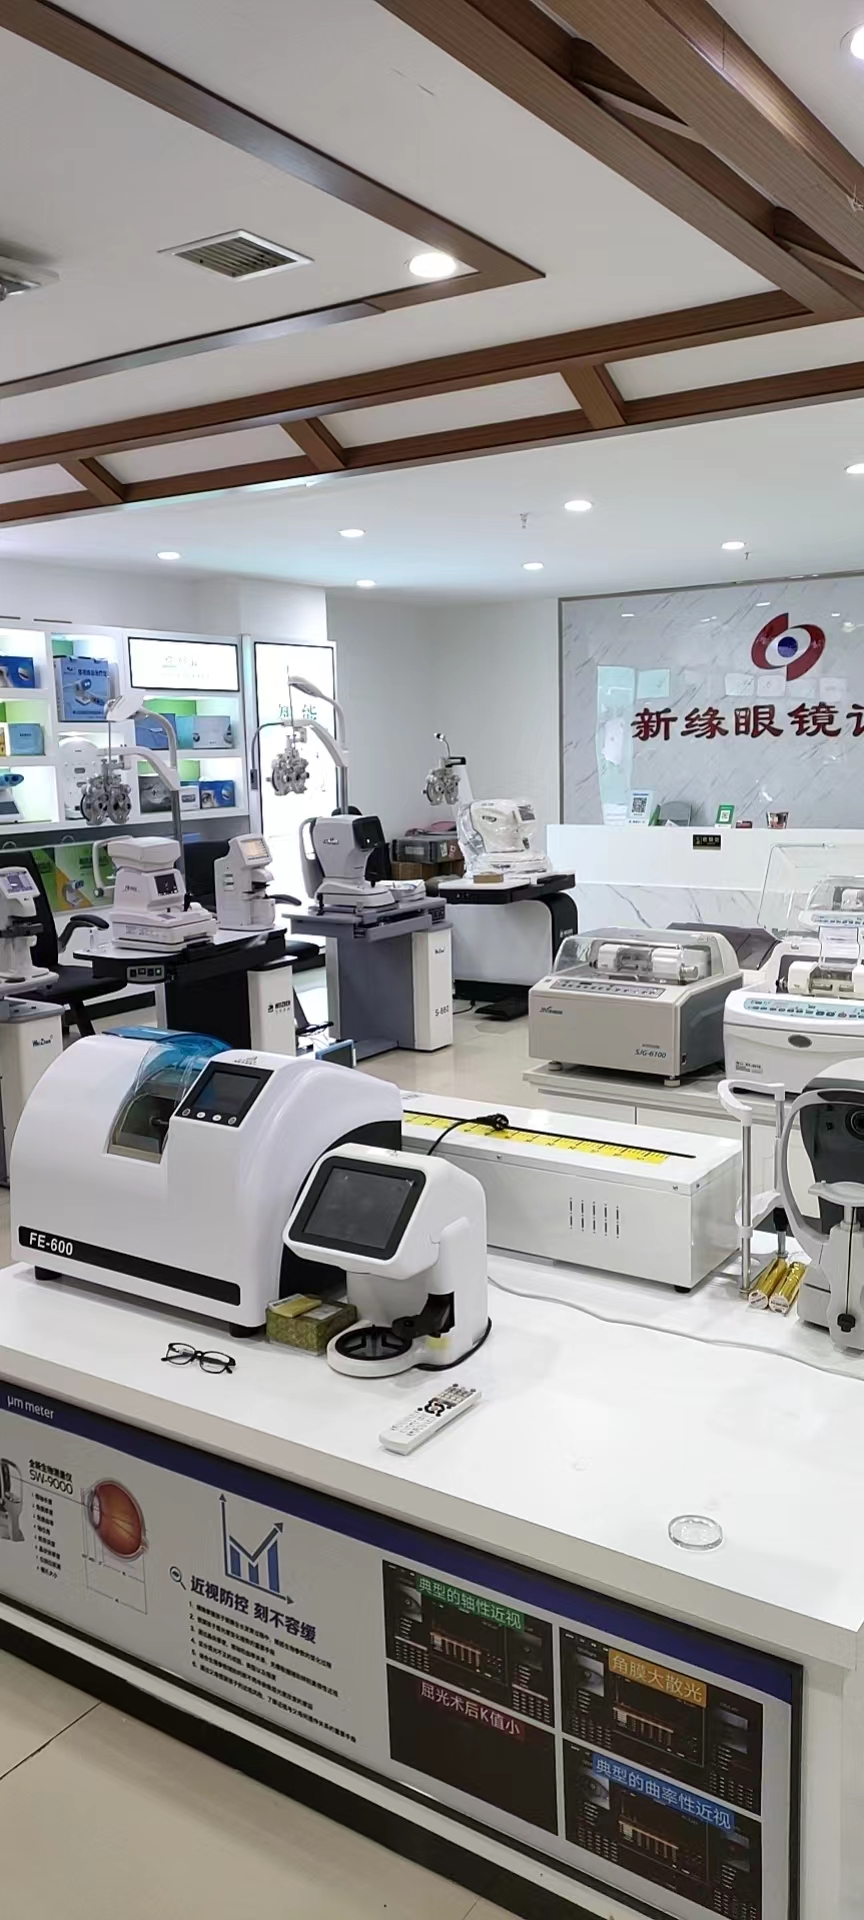 授权代理商：长沙维视光学仪器销售有限公司